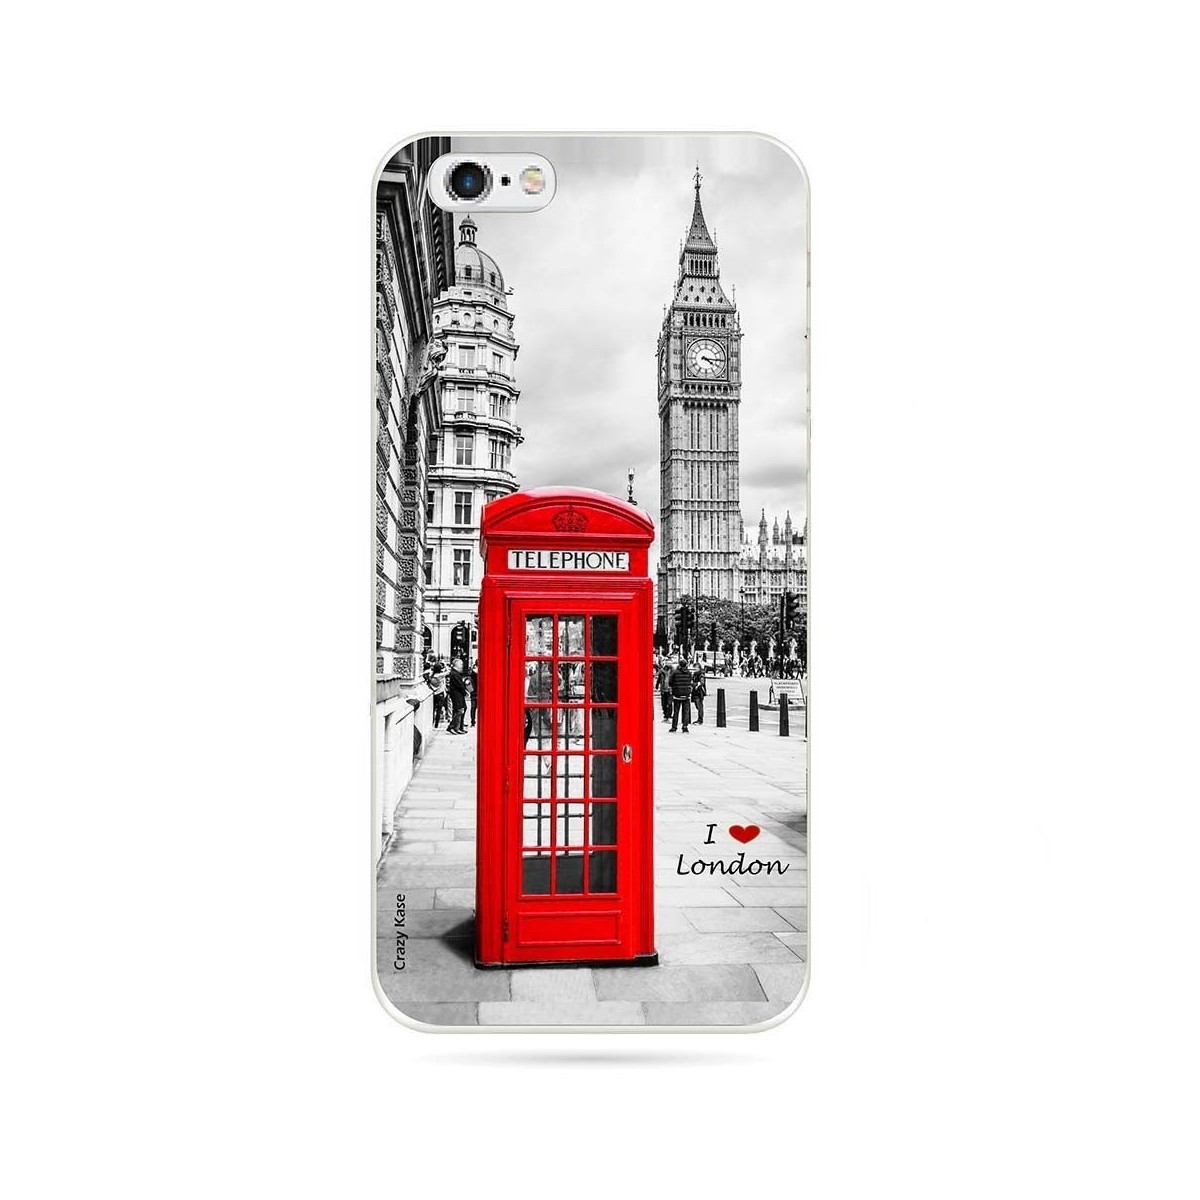 Coque iPhone 6 Plus / 6s Plus souple motif Londres -  Crazy Kase